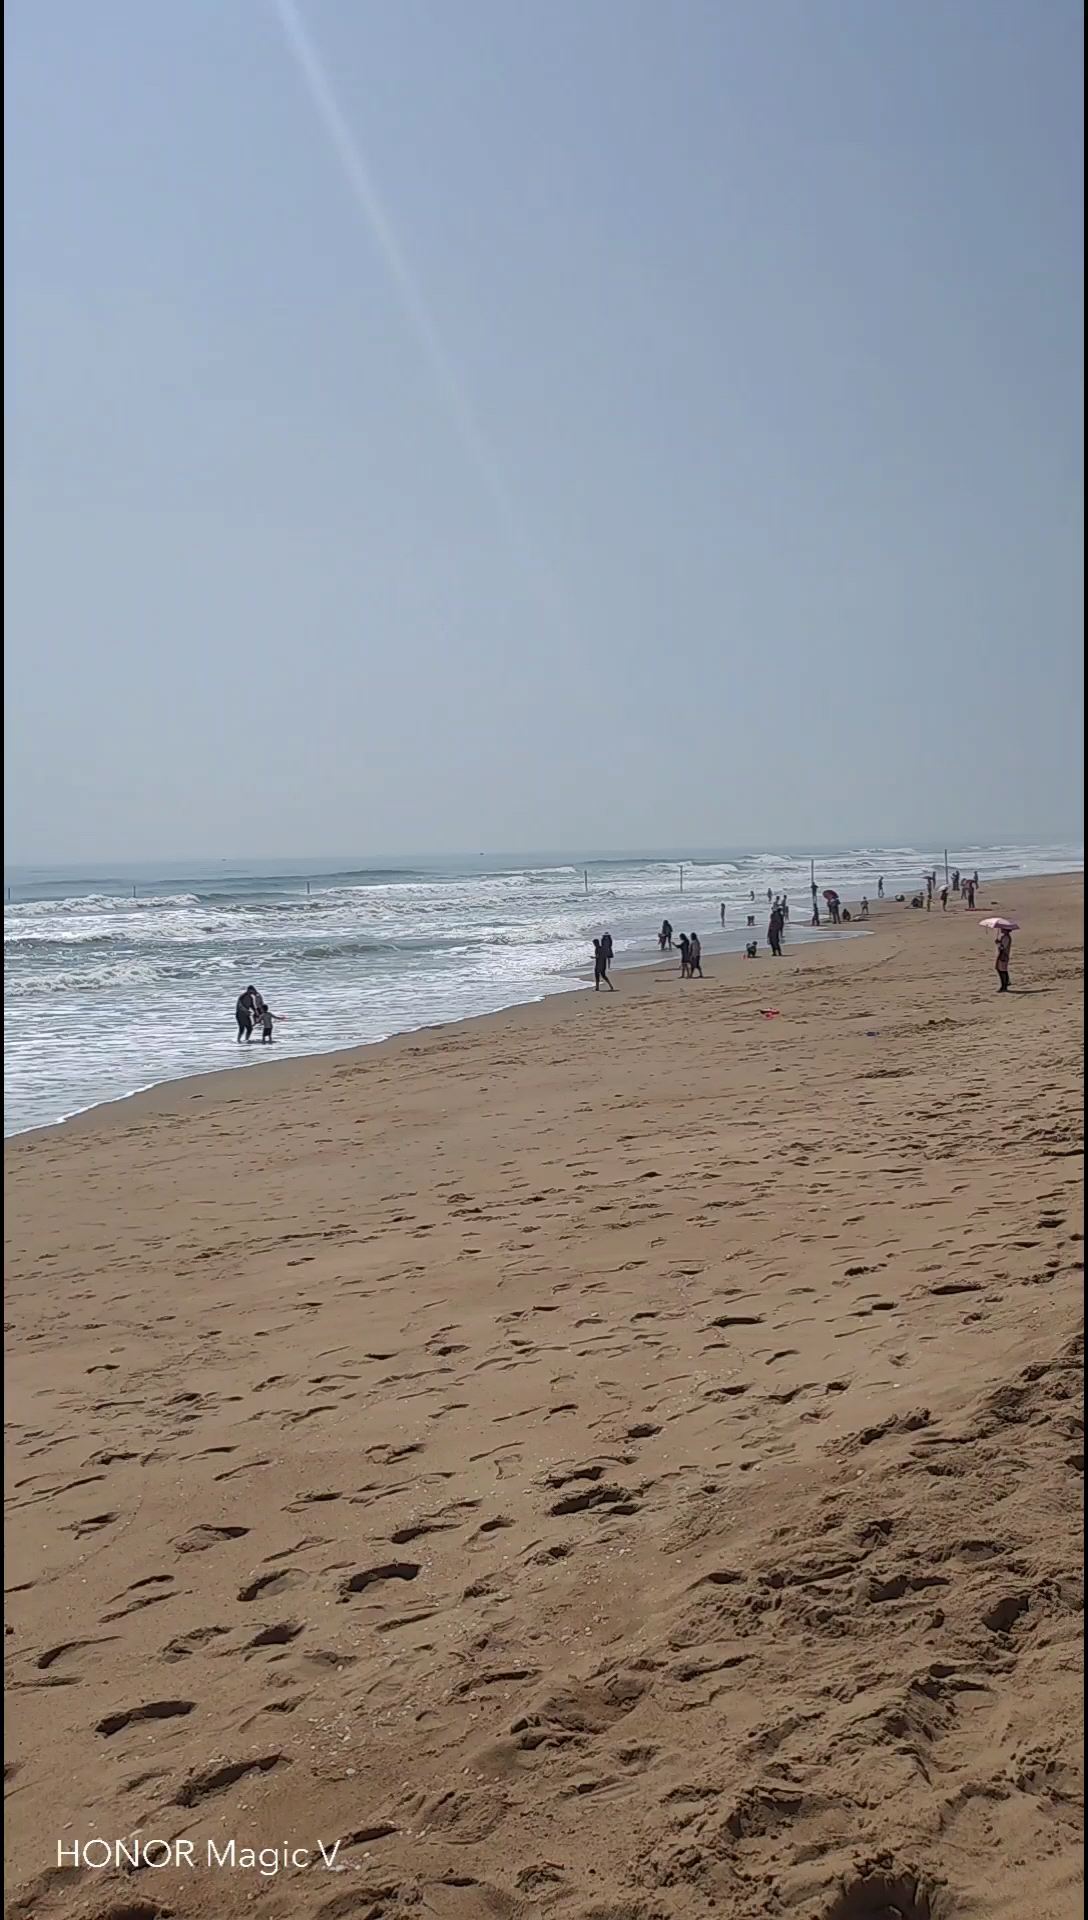 湛江的海滩，沙滩很长很细很干净。不亏称第一长海滩。